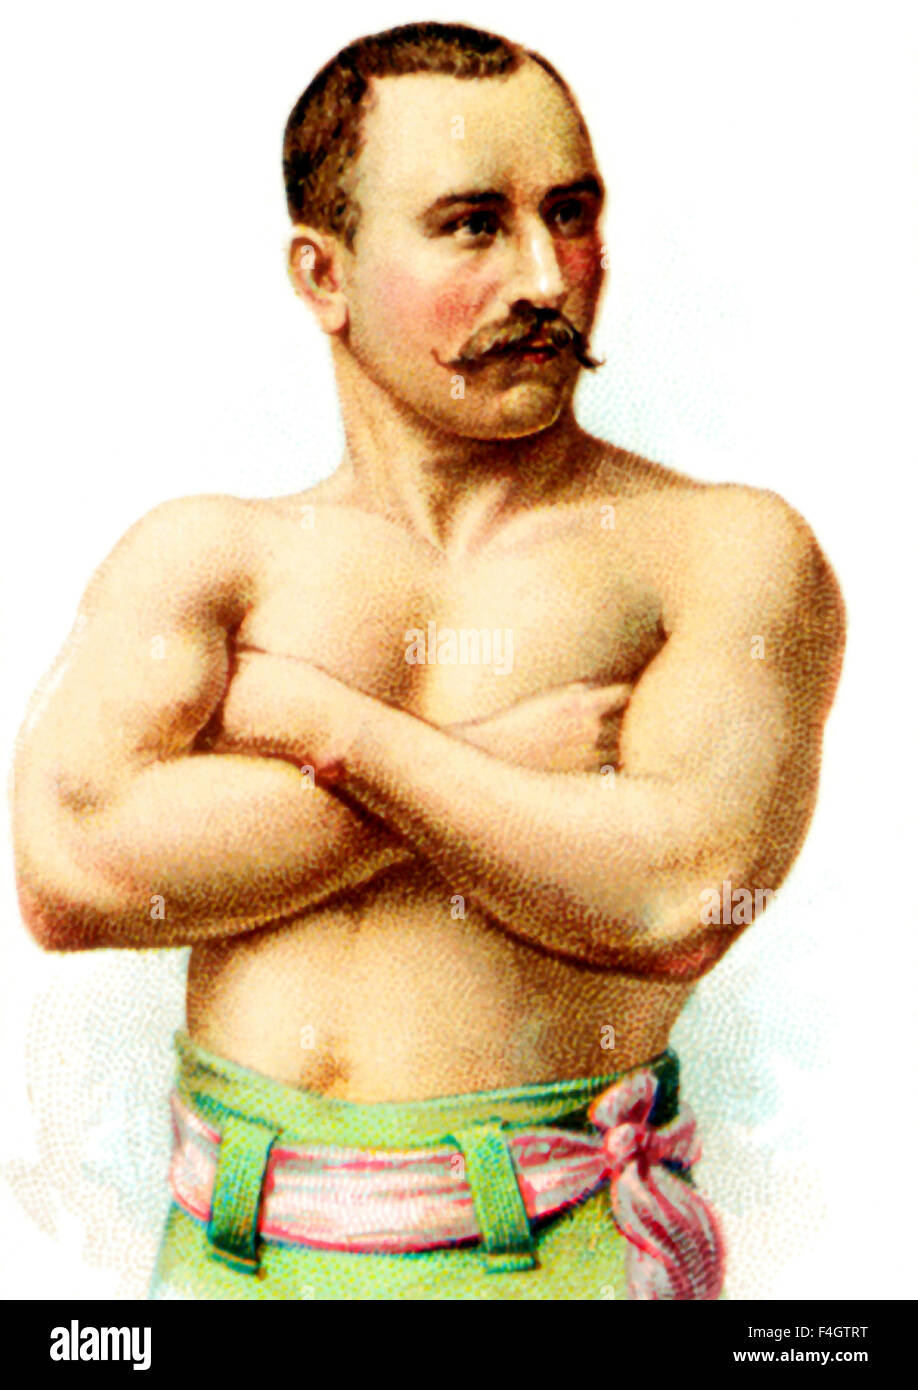 Vintage Porträt des kanadischen Mittelgewicht-Boxer George LaBlanche (1856-1918). LaBlanche (richtiger Name George Blais) wurde in Quebec geboren und erhielt den Spitznamen "The Marine". Er ist berühmt für ausschlagen World Champion im Mittelgewicht "Bali" Jack Dempsey 1889 mit einer illegalen Punsch. Stockfoto